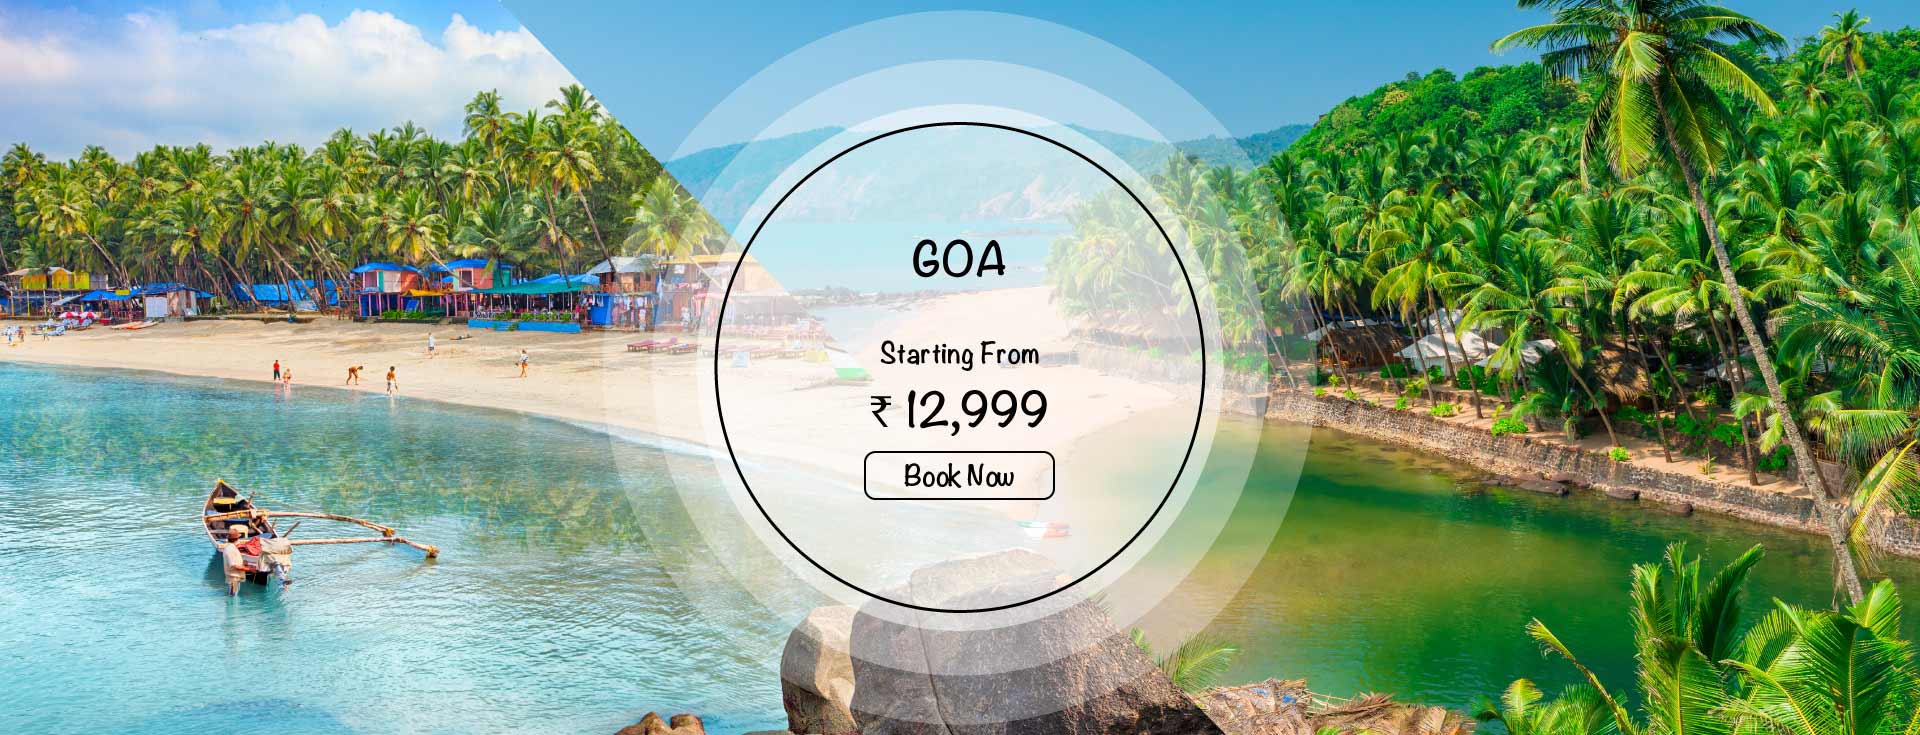 Goa Holidays